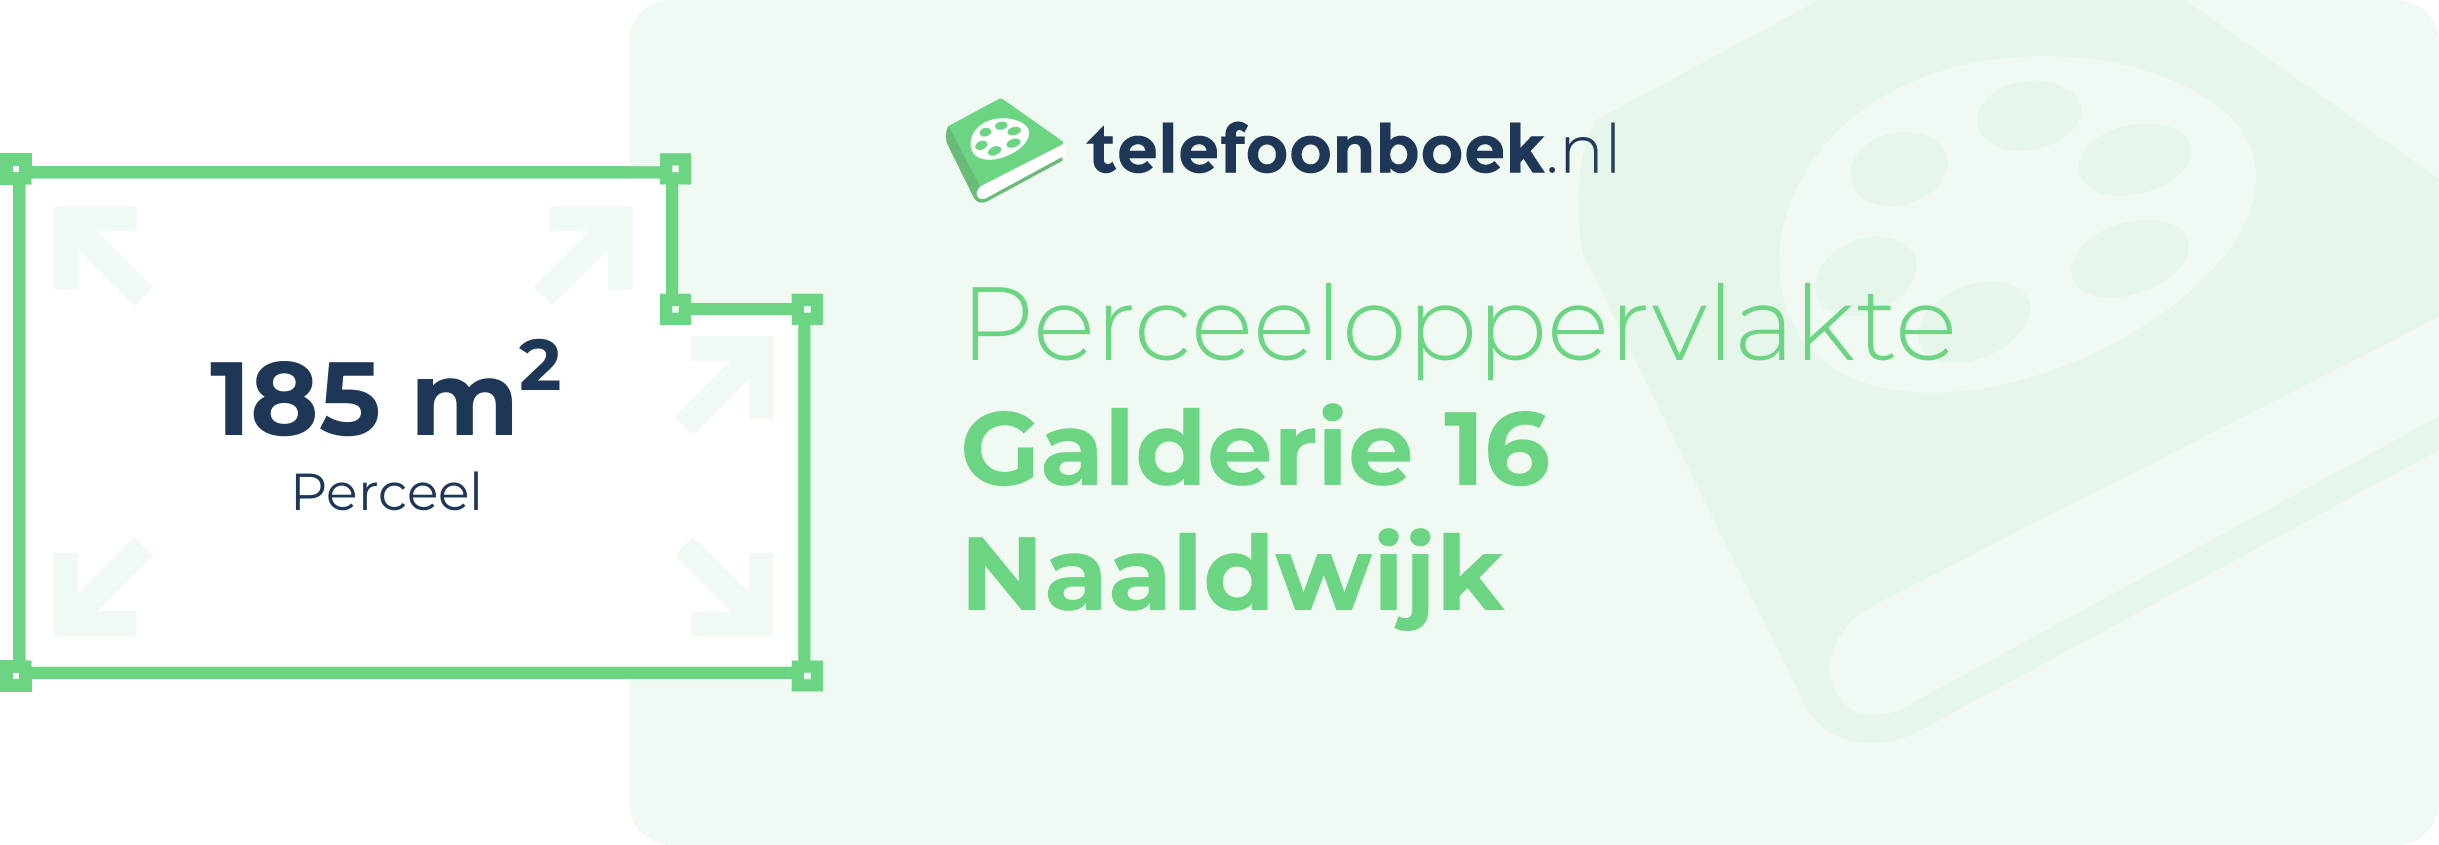 Perceeloppervlakte Galderie 16 Naaldwijk